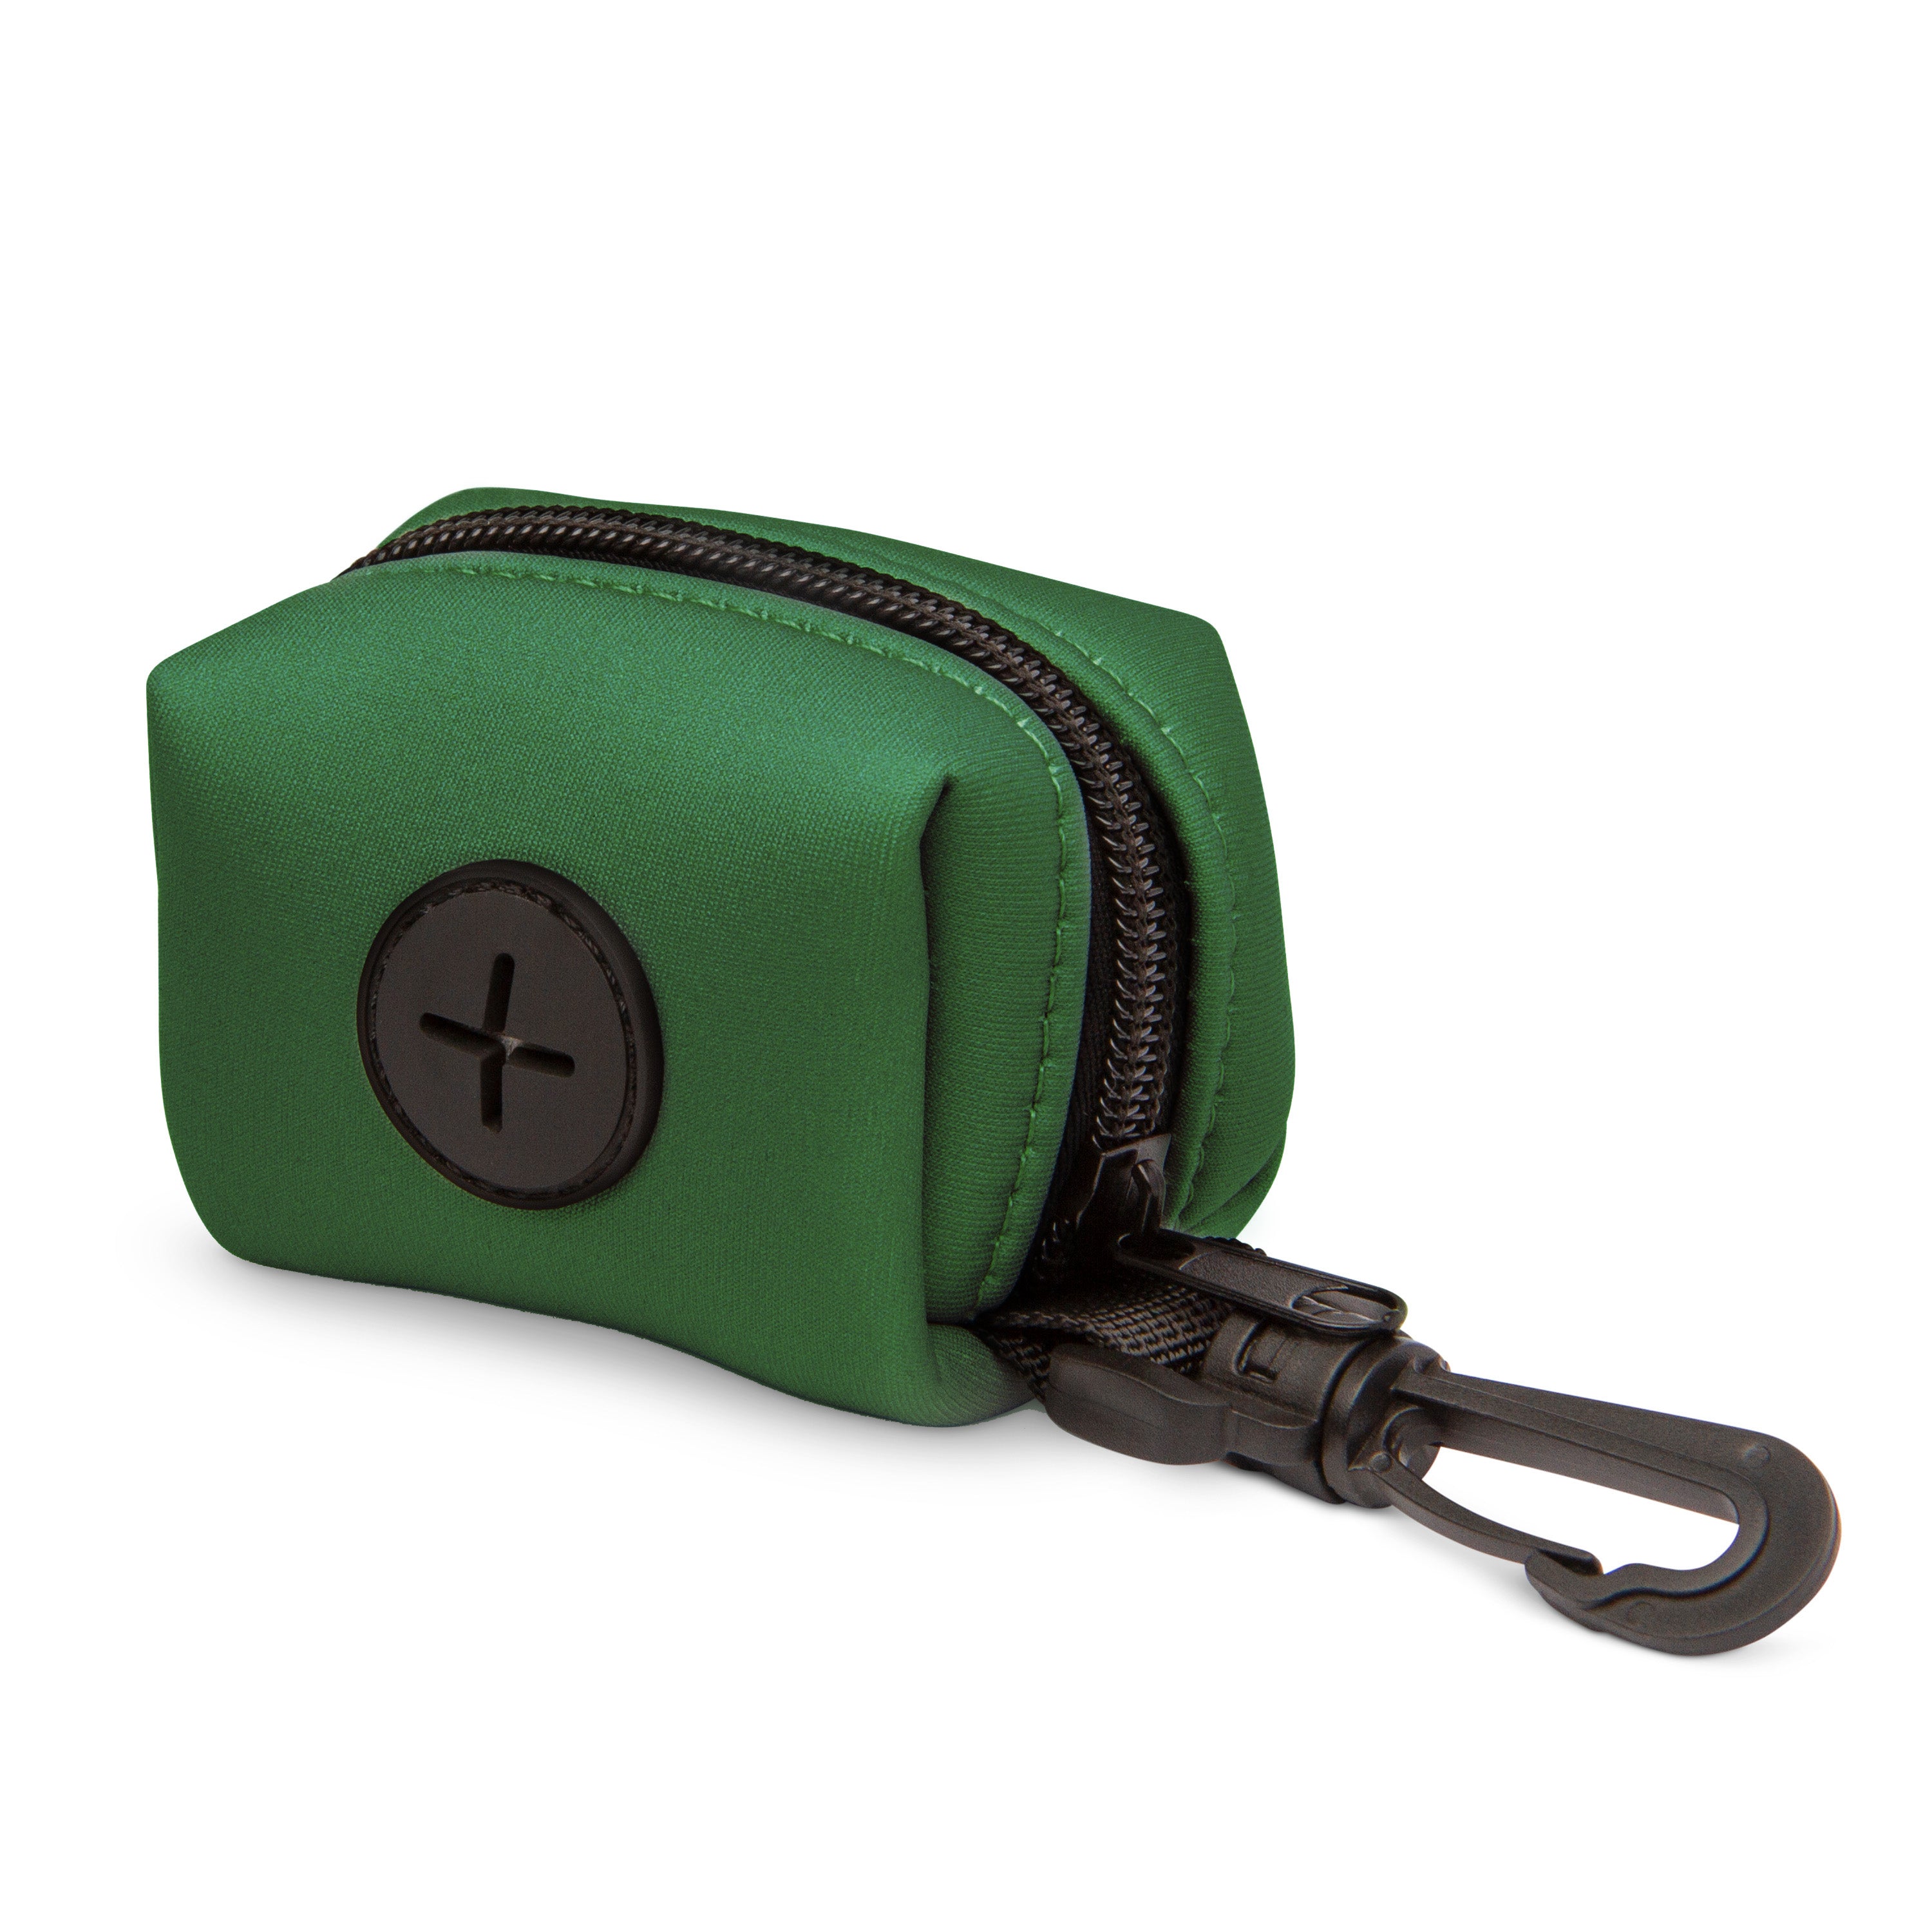 The Modern Dog Company - Clover Green Poop Bag Holder